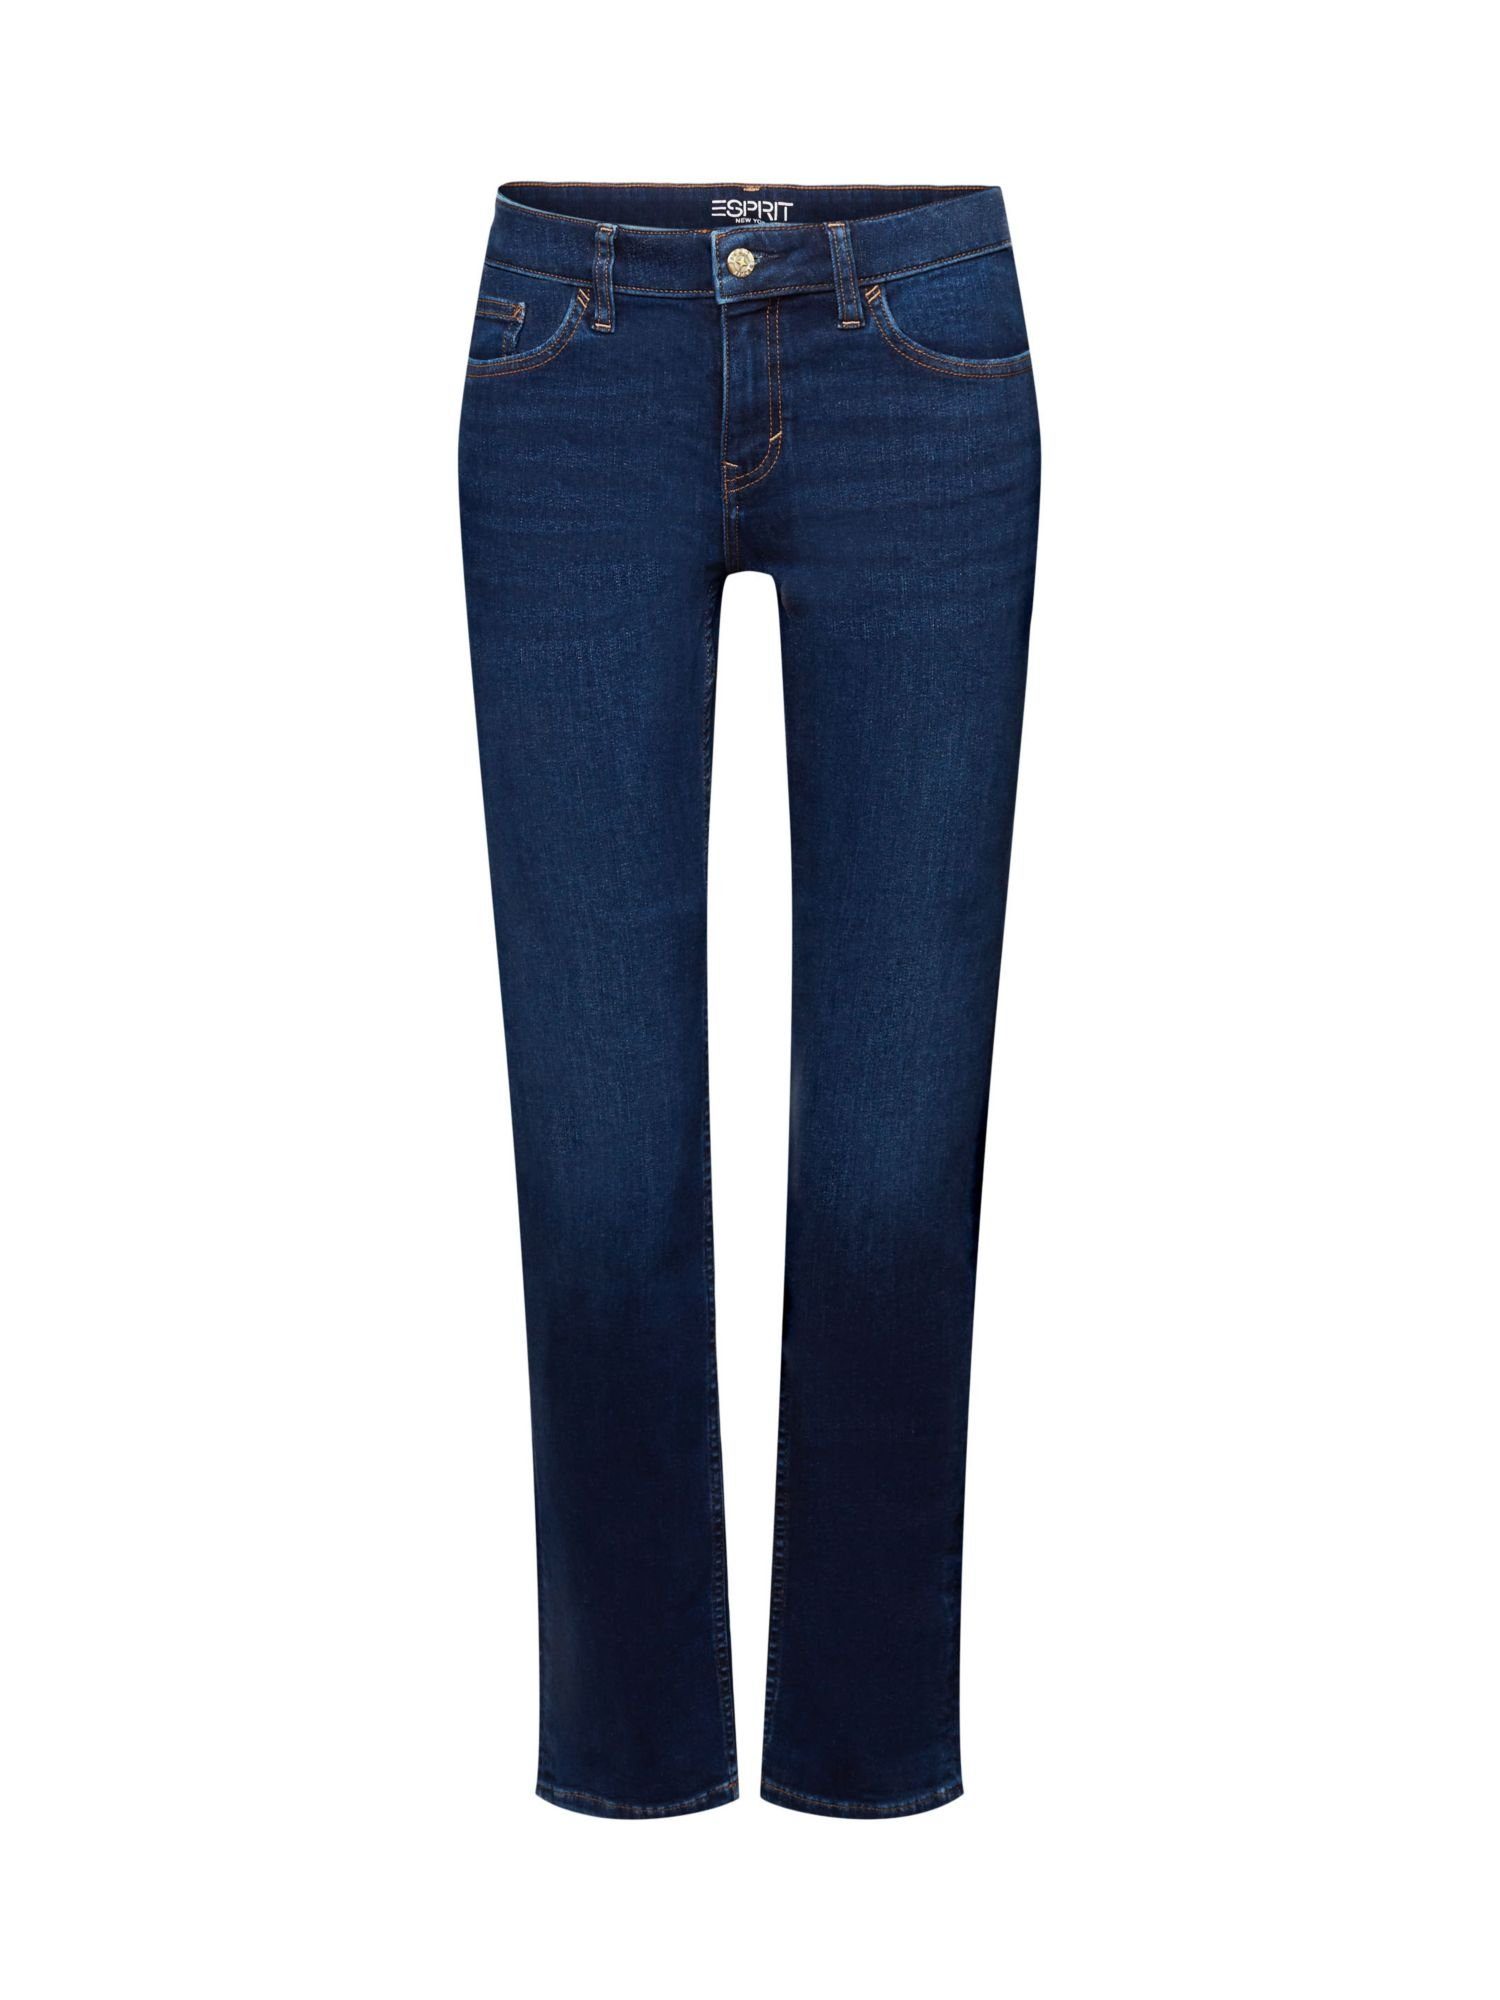 Esprit Straight-Jeans Stretchjeans mit geradem Bein, Baumwollmix BLUE LIGHT WASHED